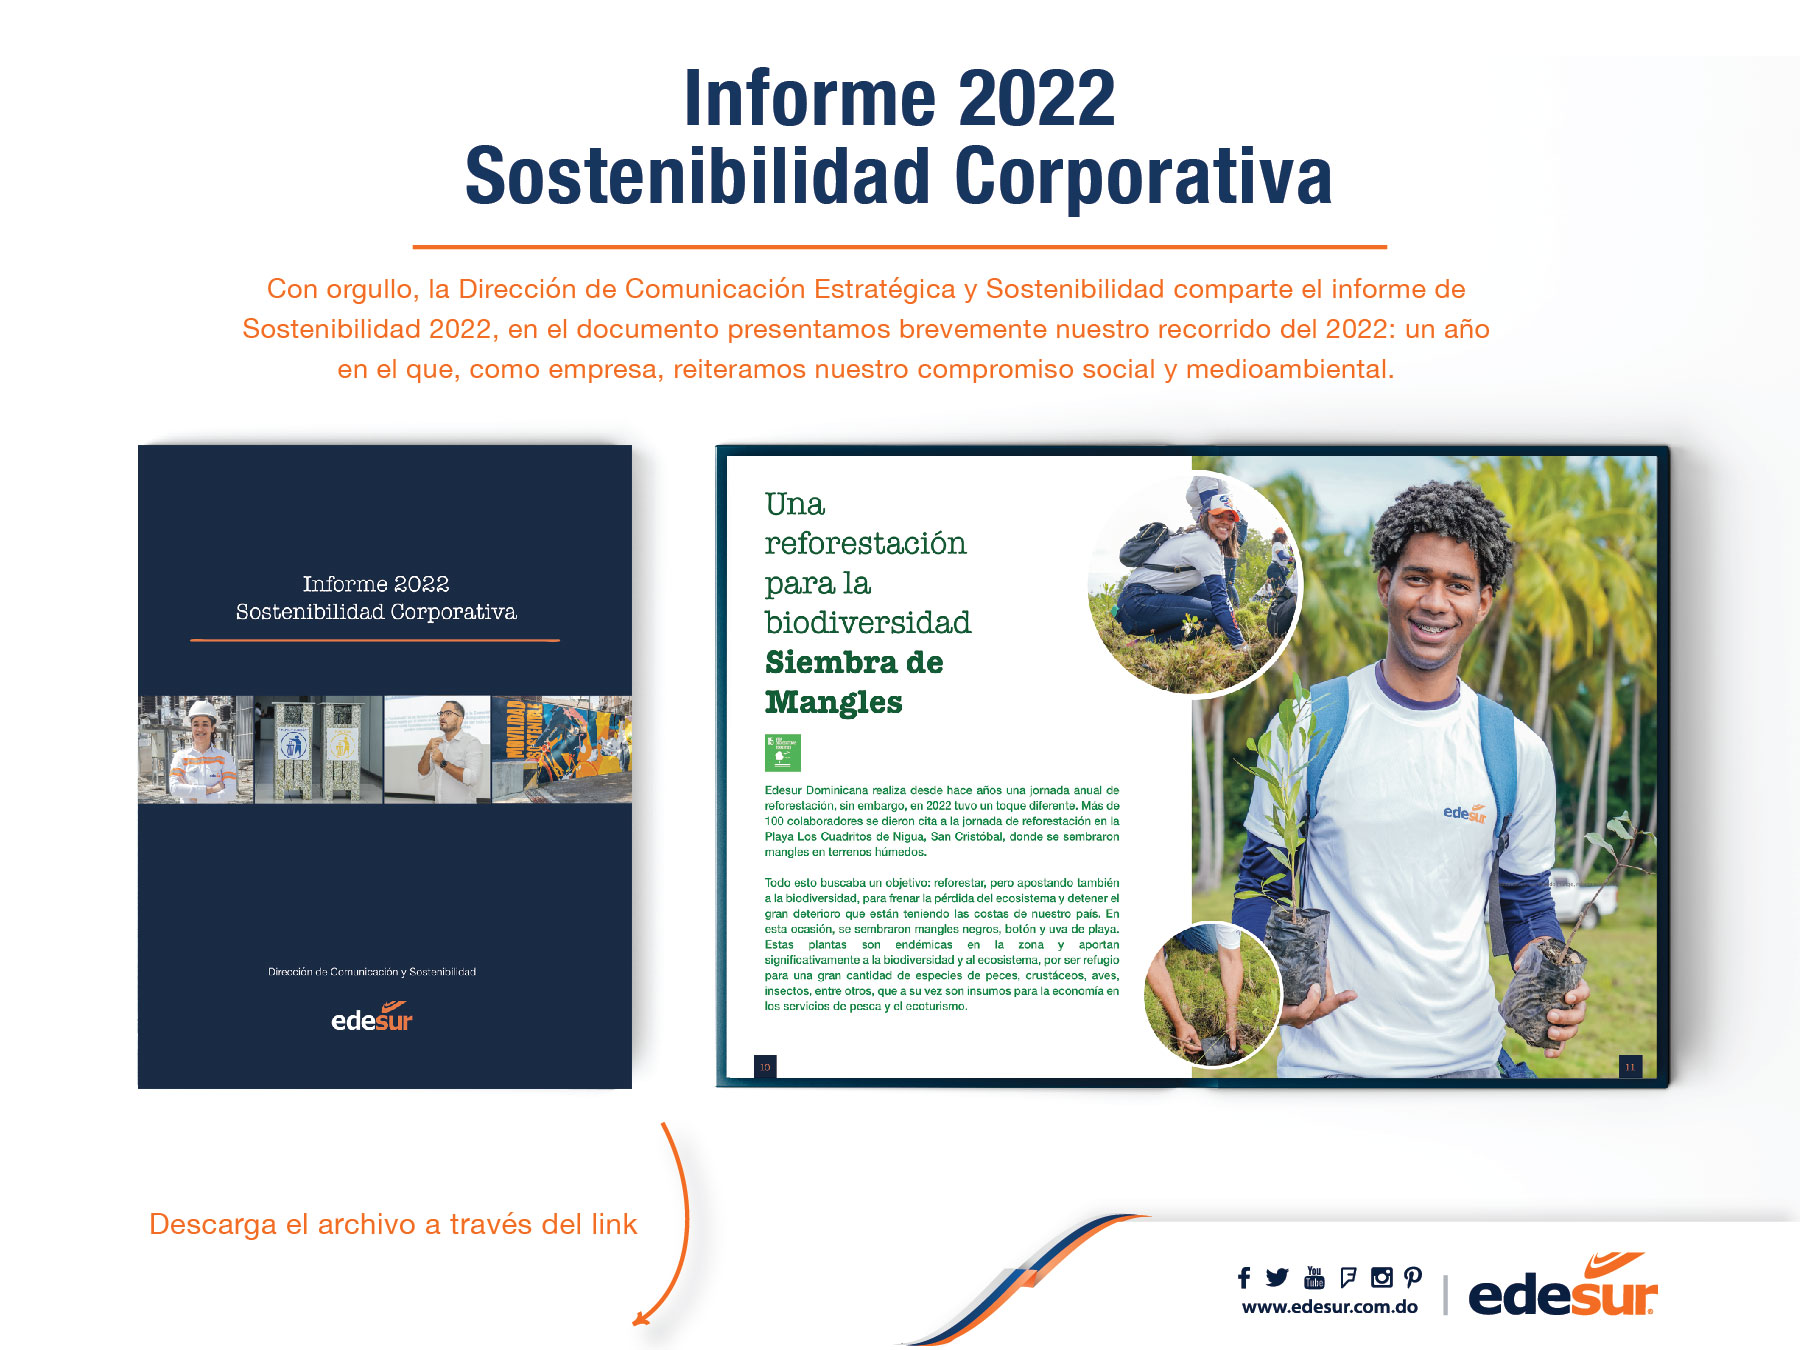 Informe de Sostenibilidad Corporativa 2022 de Edesur Dominicana